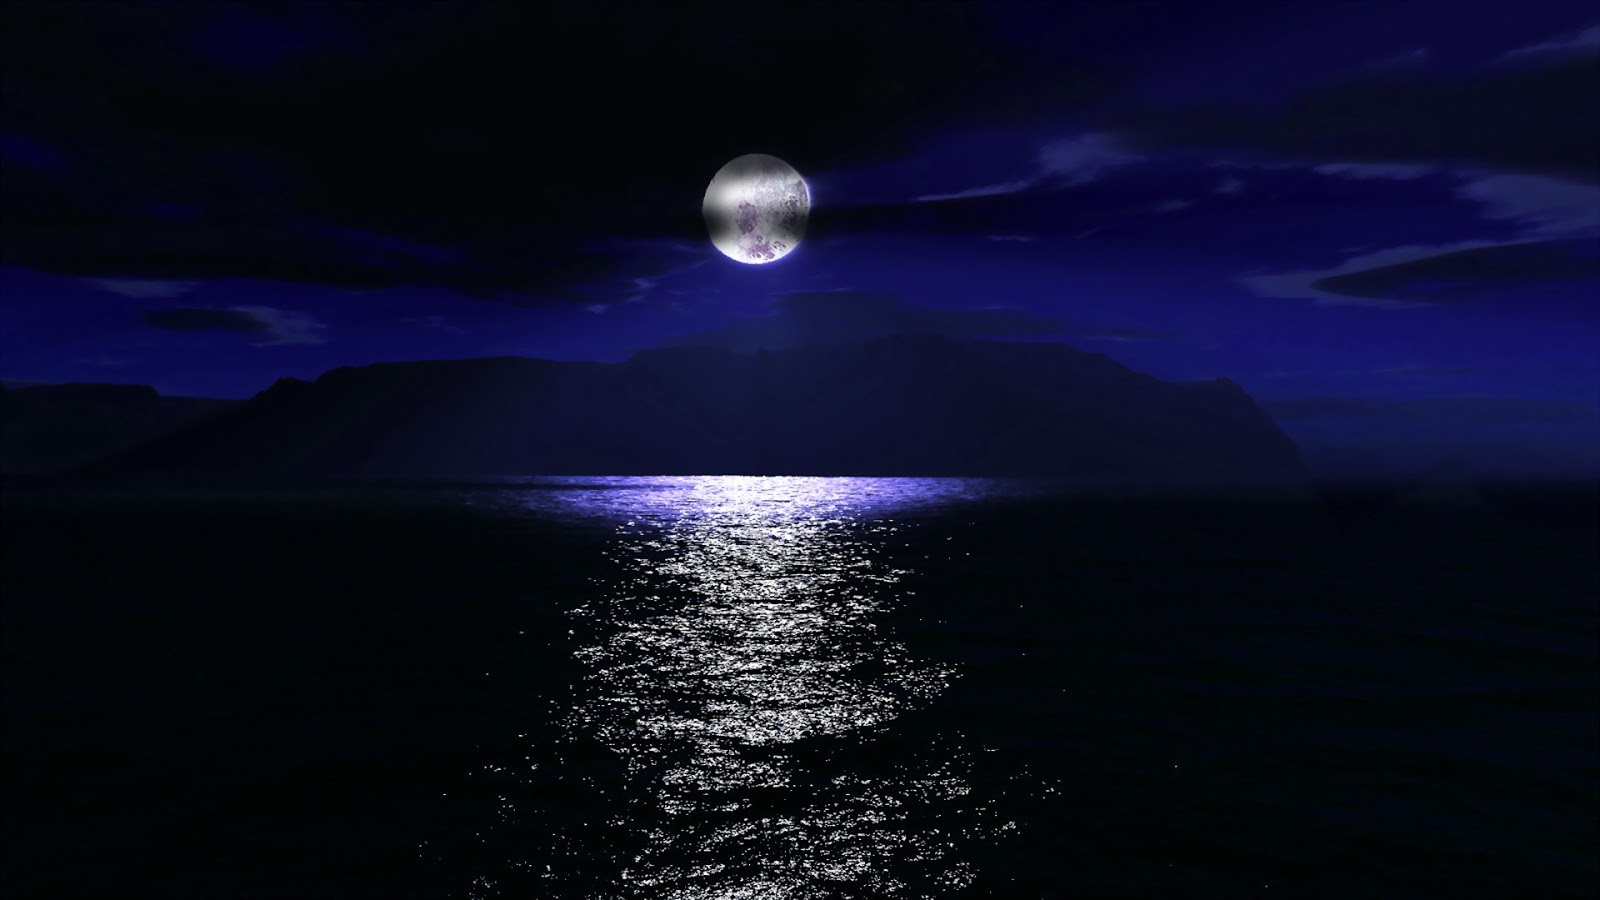 HD Wallpaper Pics Abstract Night Moon